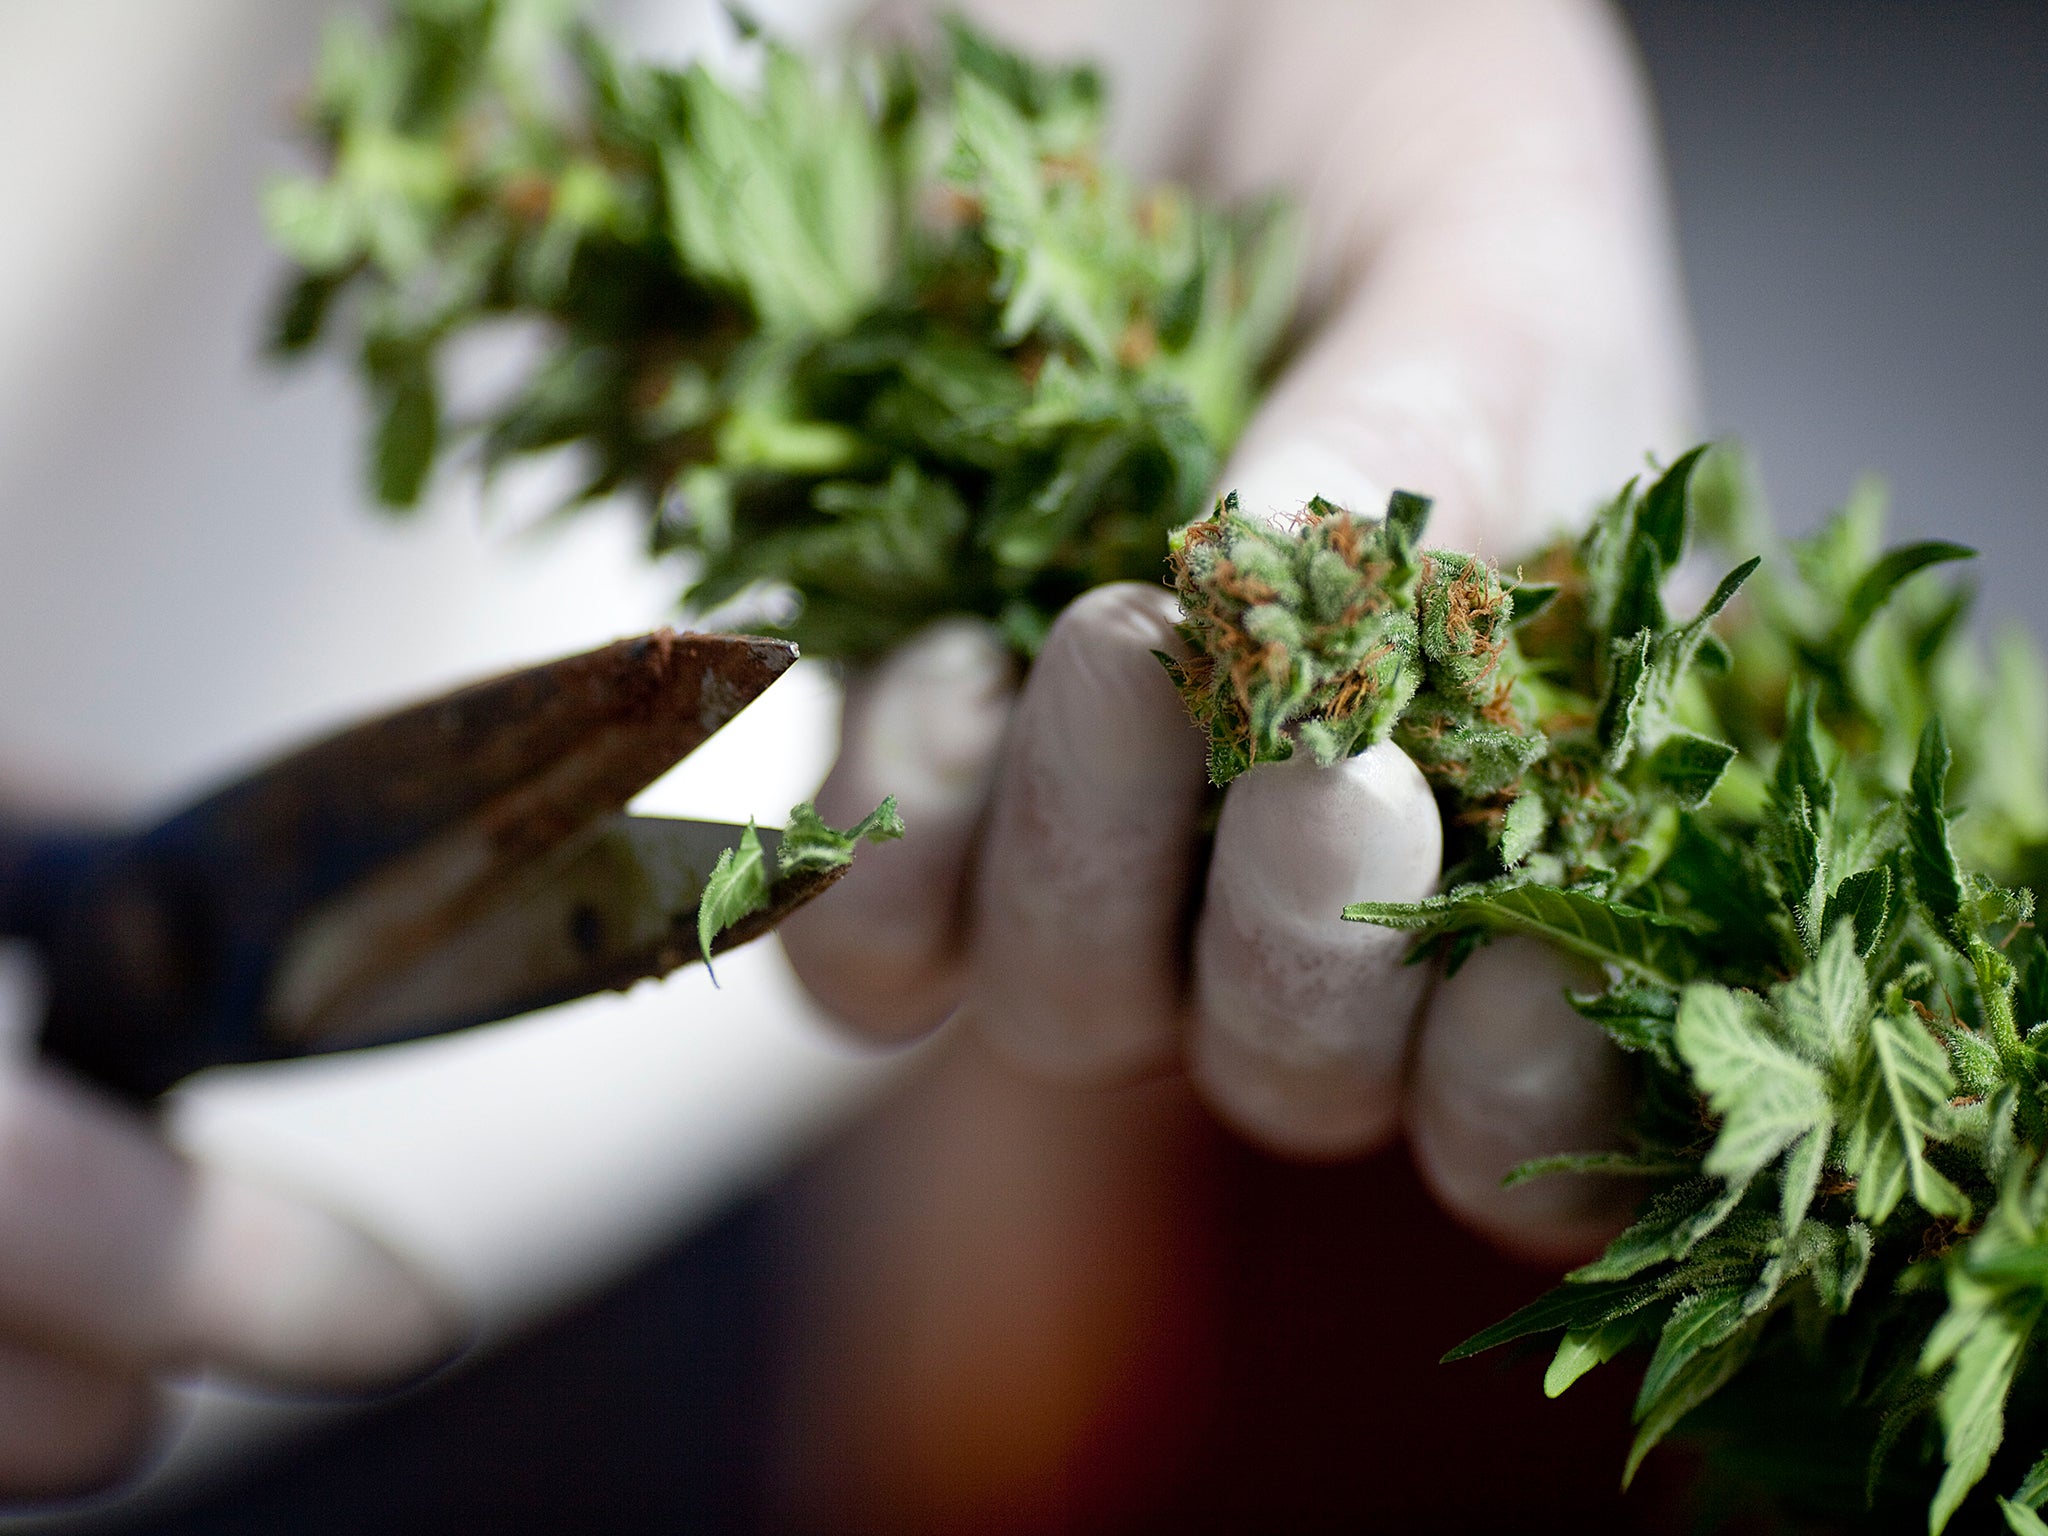 Several US states have already legalised marijuana